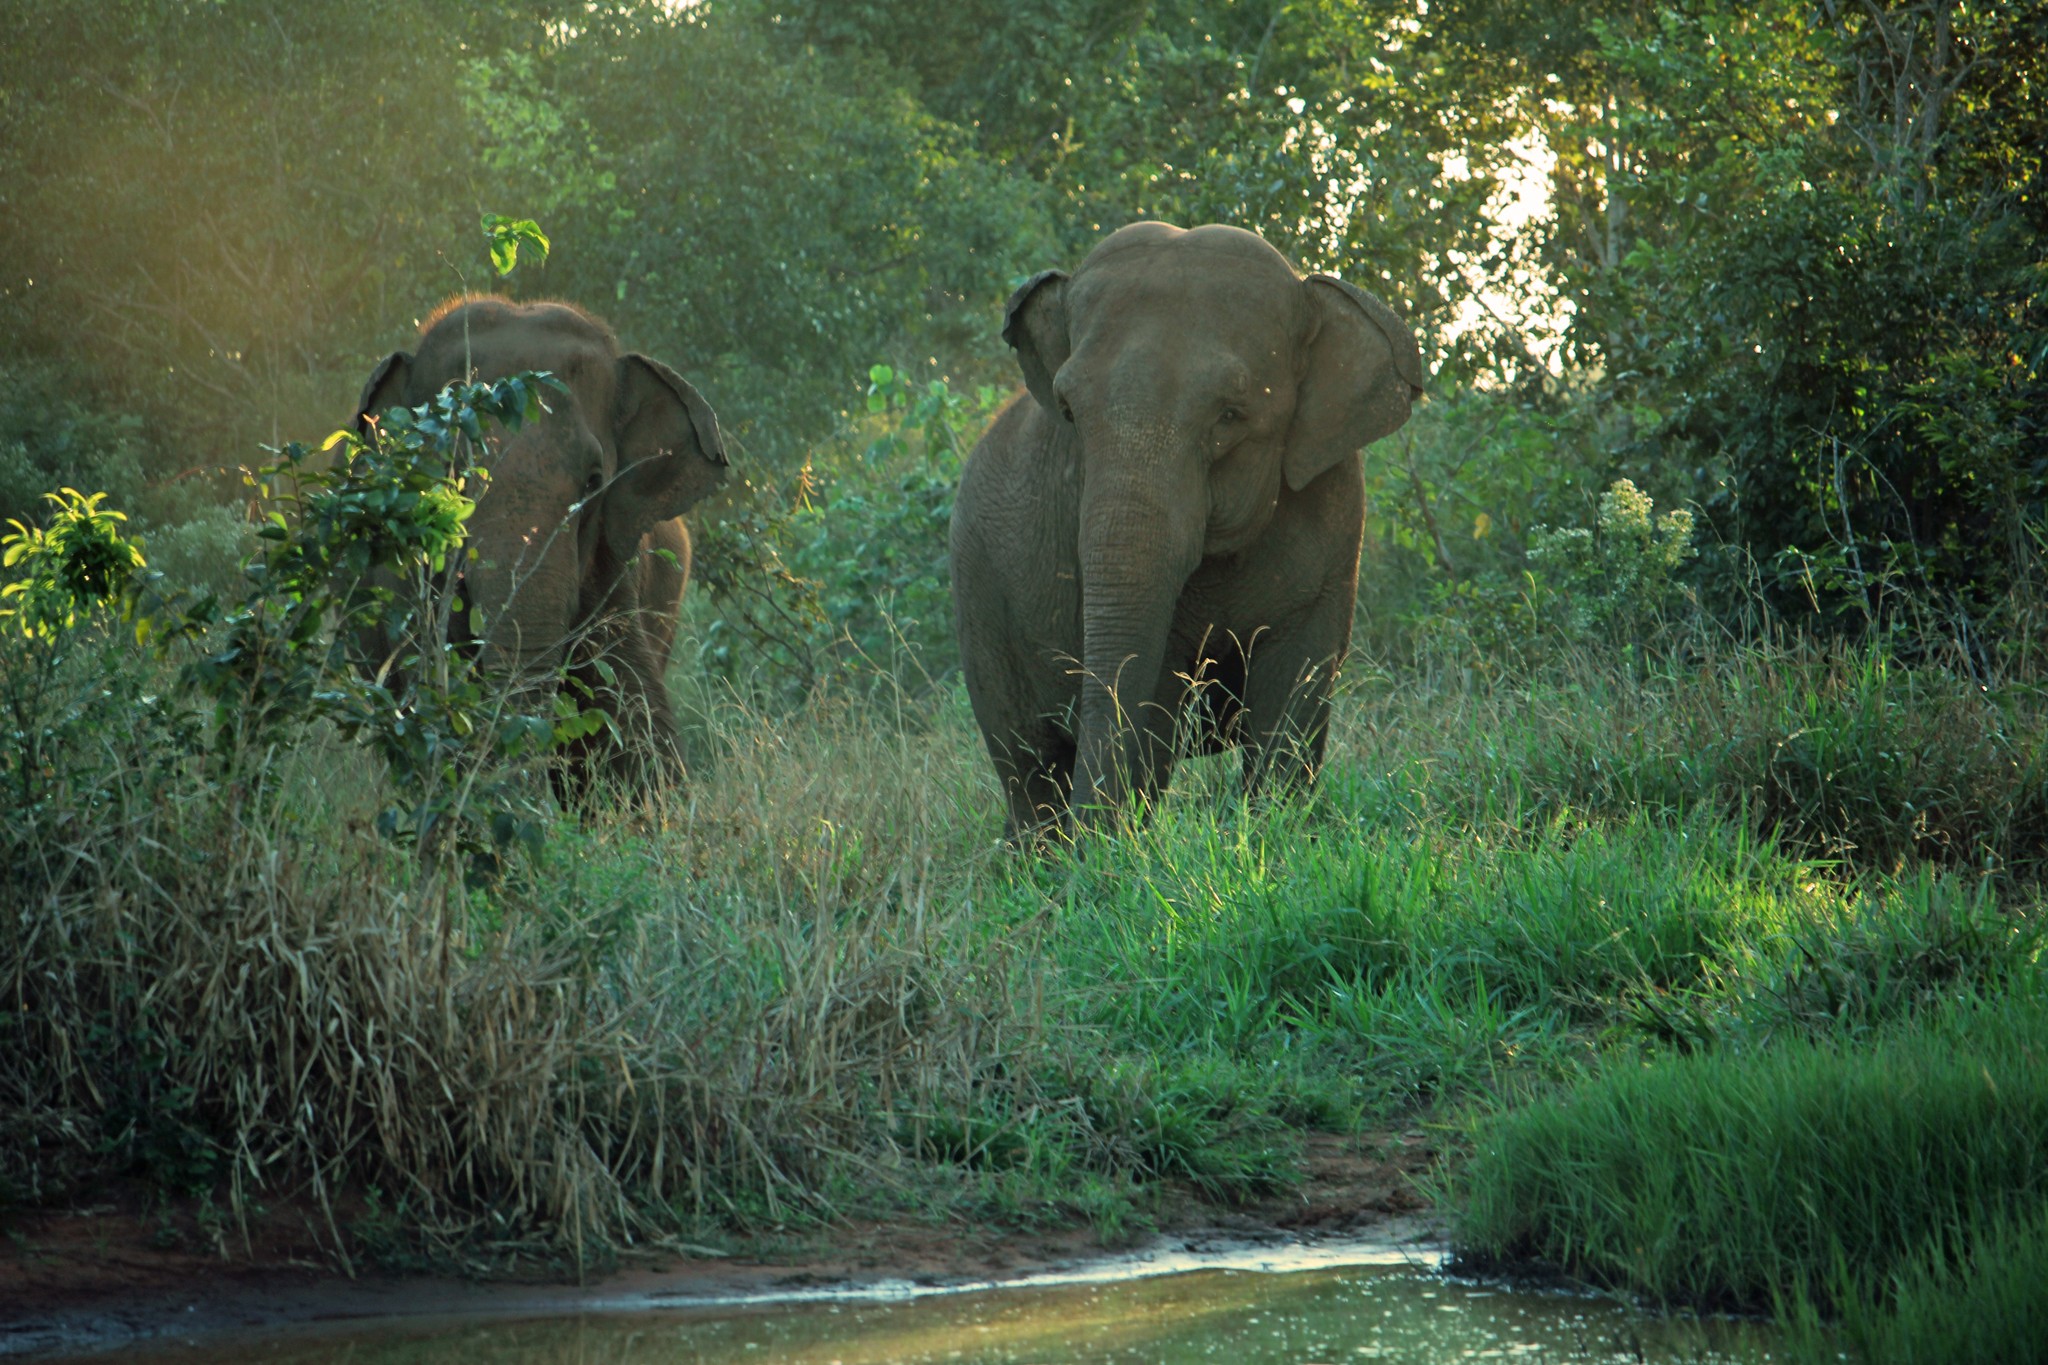 Rana (esquerda) e Mara (direita) gostam de passear juntas pelo santuário (Foto: Global Sanctuary for Elephants/Associação Santuário de Elefantes Brasil)